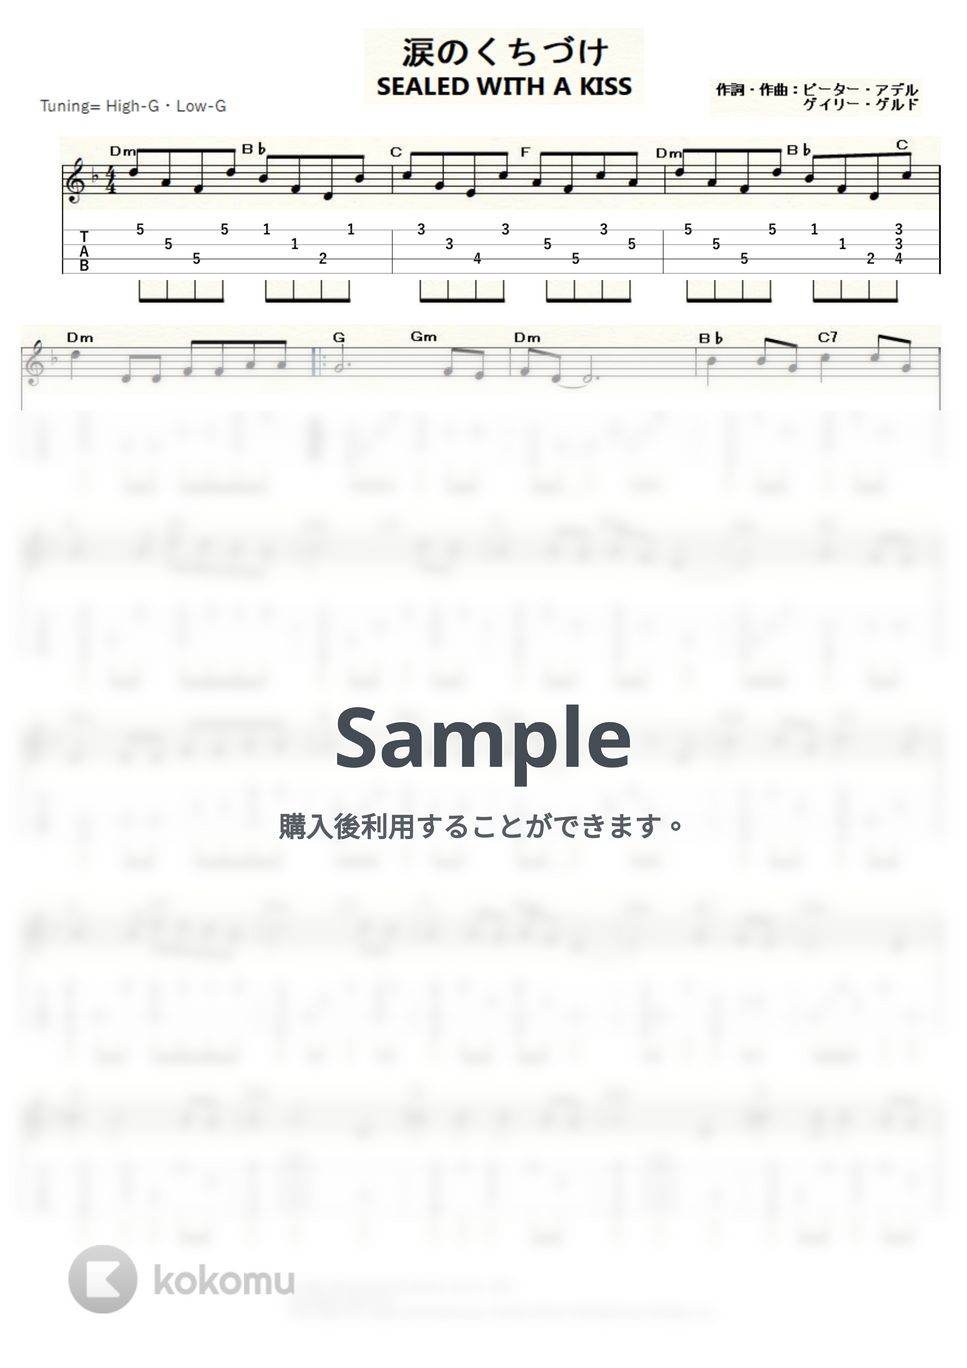 レターメン - 涙のくちづけ (ｳｸﾚﾚｿﾛ / High-G・Low-G / 中級) by ukulelepapa